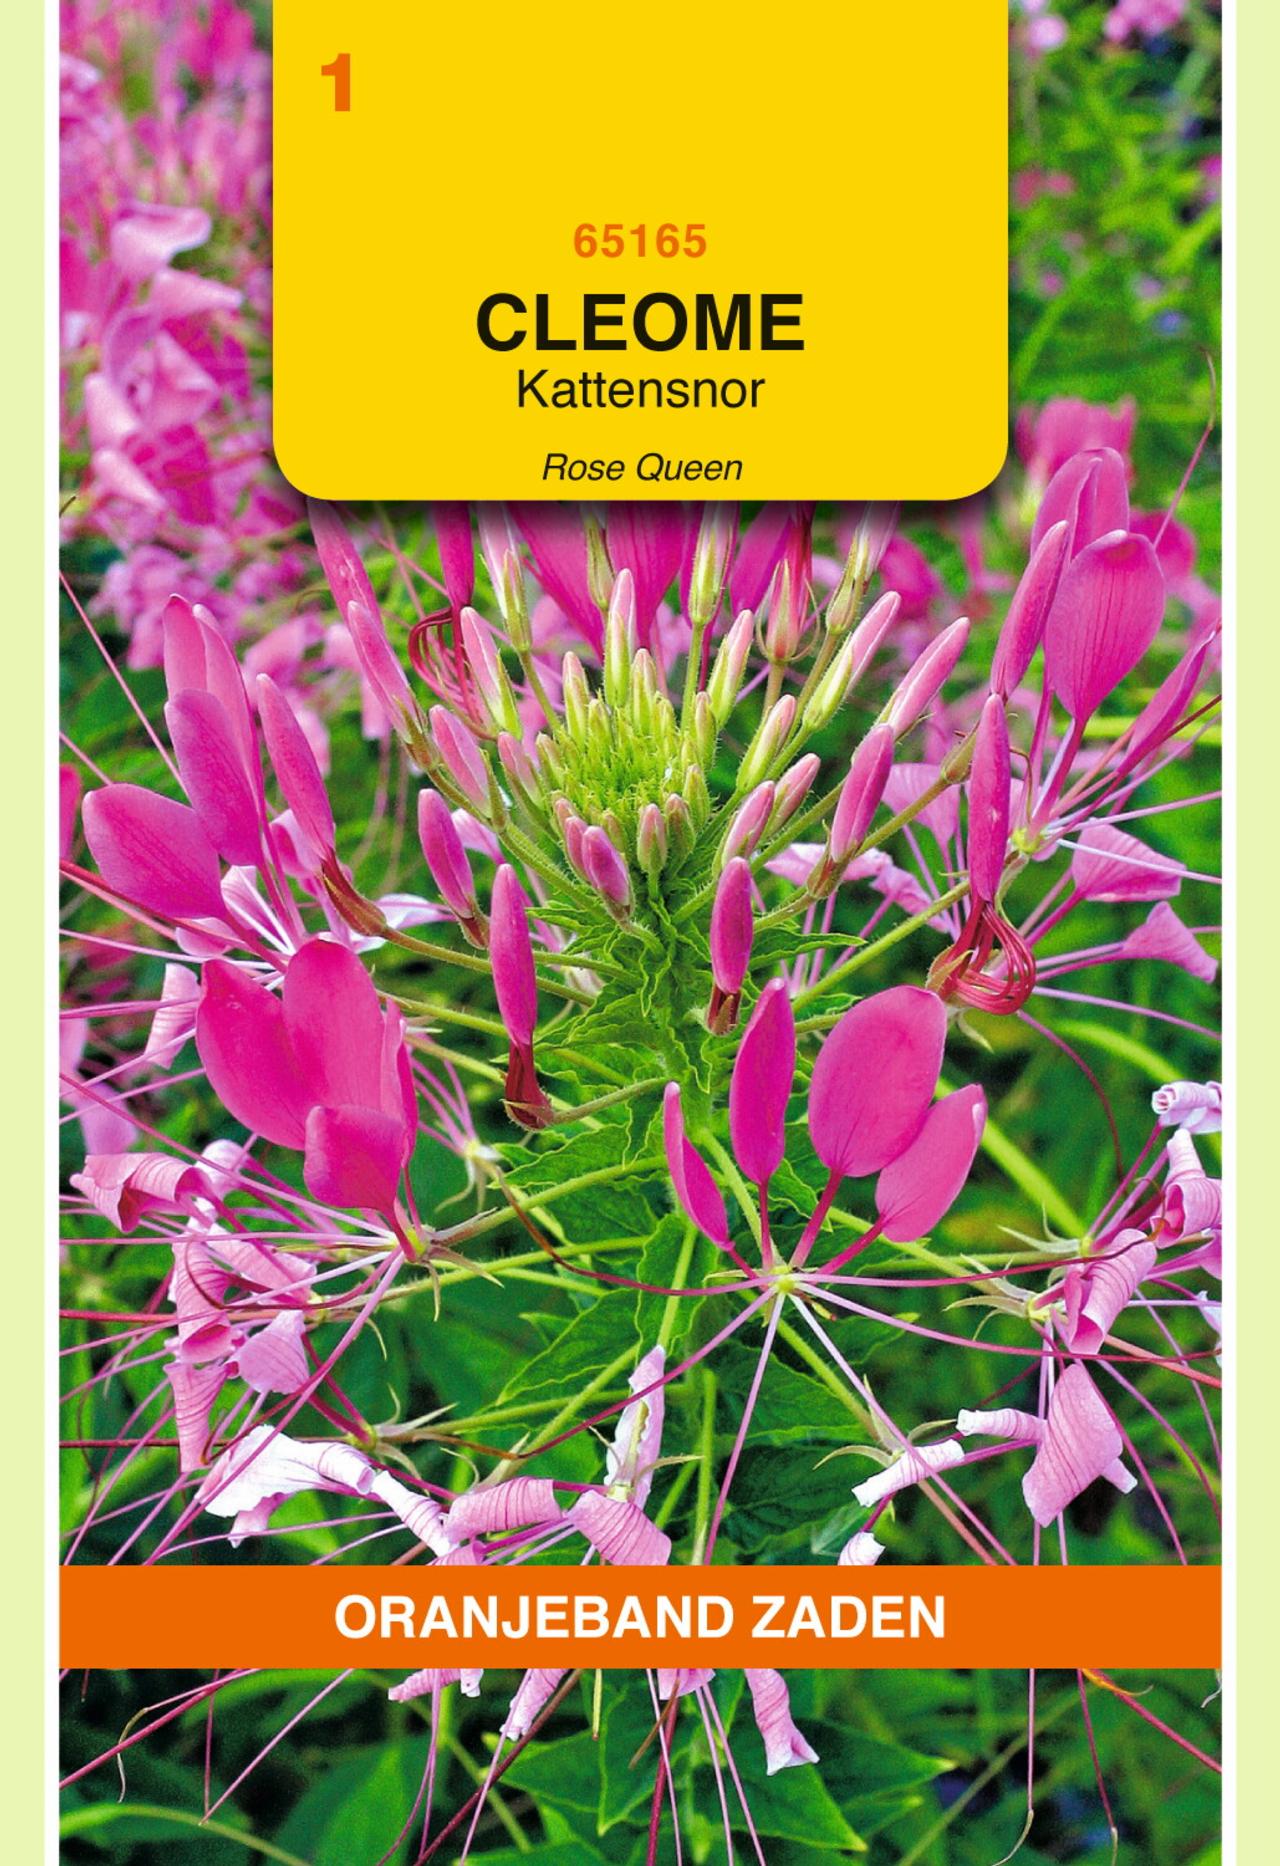 Cleome hassleriana plant